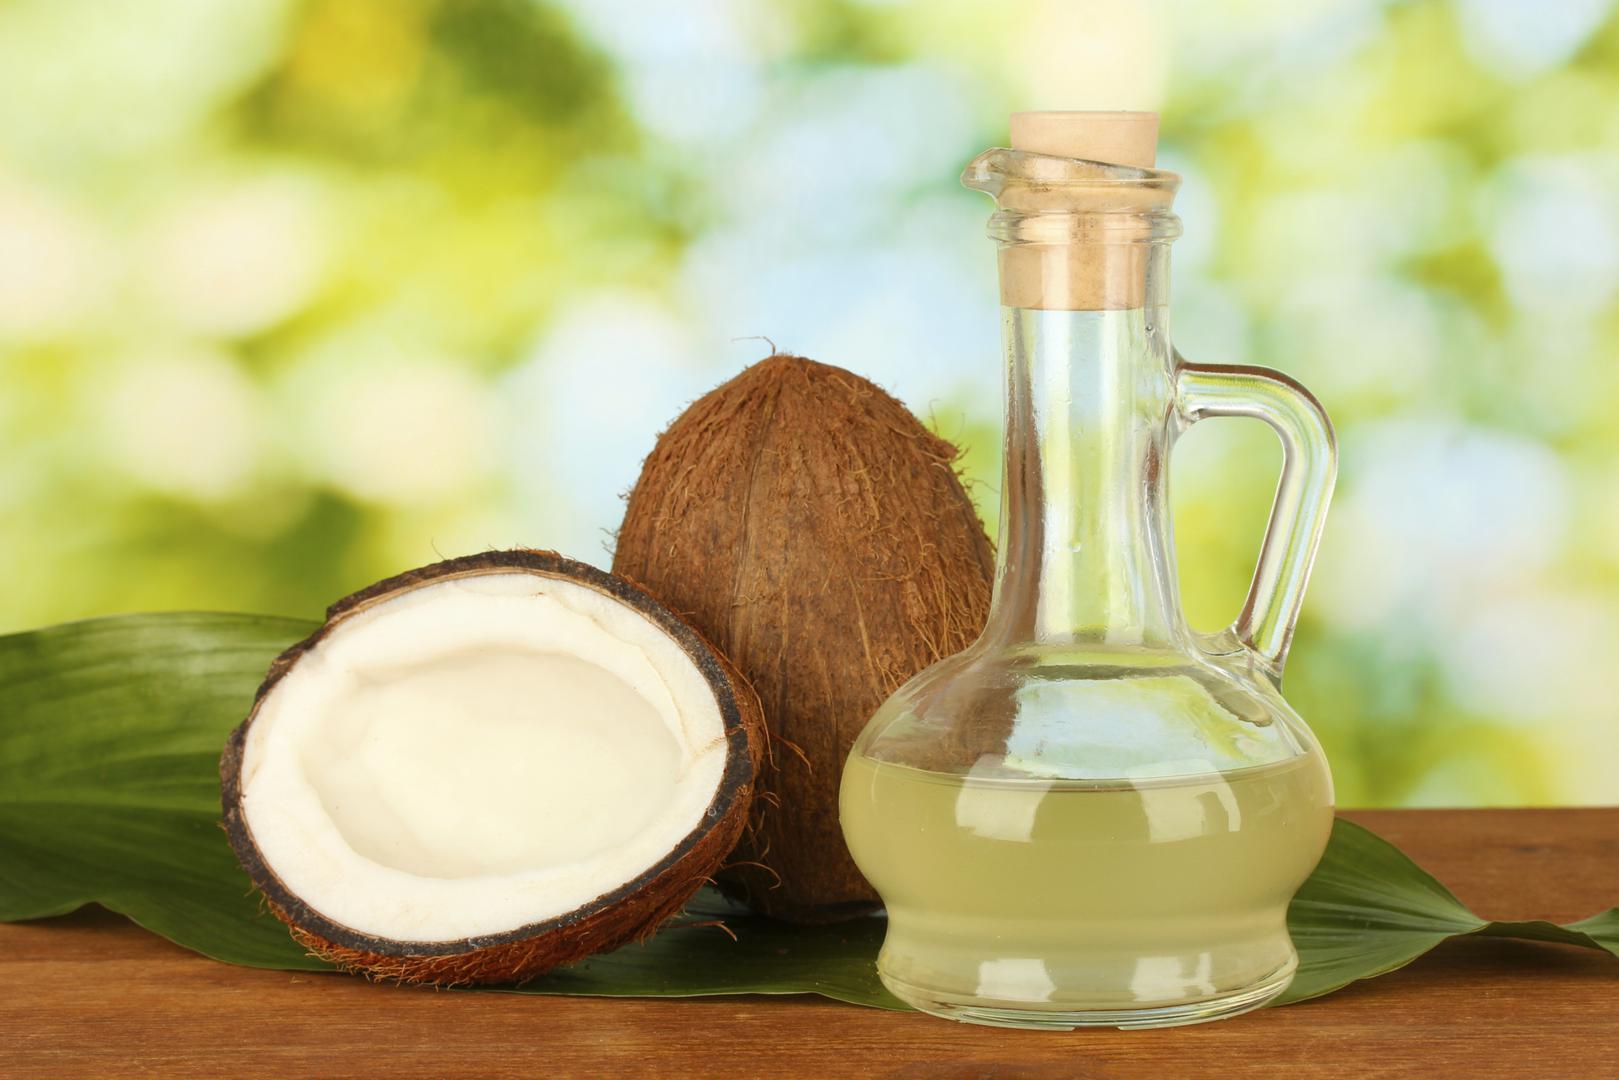 Posljednjih se godina sve više priča o kokosovom ulju kao vrhunskom
 prirodnom proizvodu koji ima široki spektar upotrebe i zaštite. Osim što je prava supernamirnica zbog svojih nutritivnih svojstava, ovo ulje možemo koristiti i za čišćenje, njegu kože, skidanje mrlja, zaštitu od komaraca i sl, piše Alternativa za Vas. 